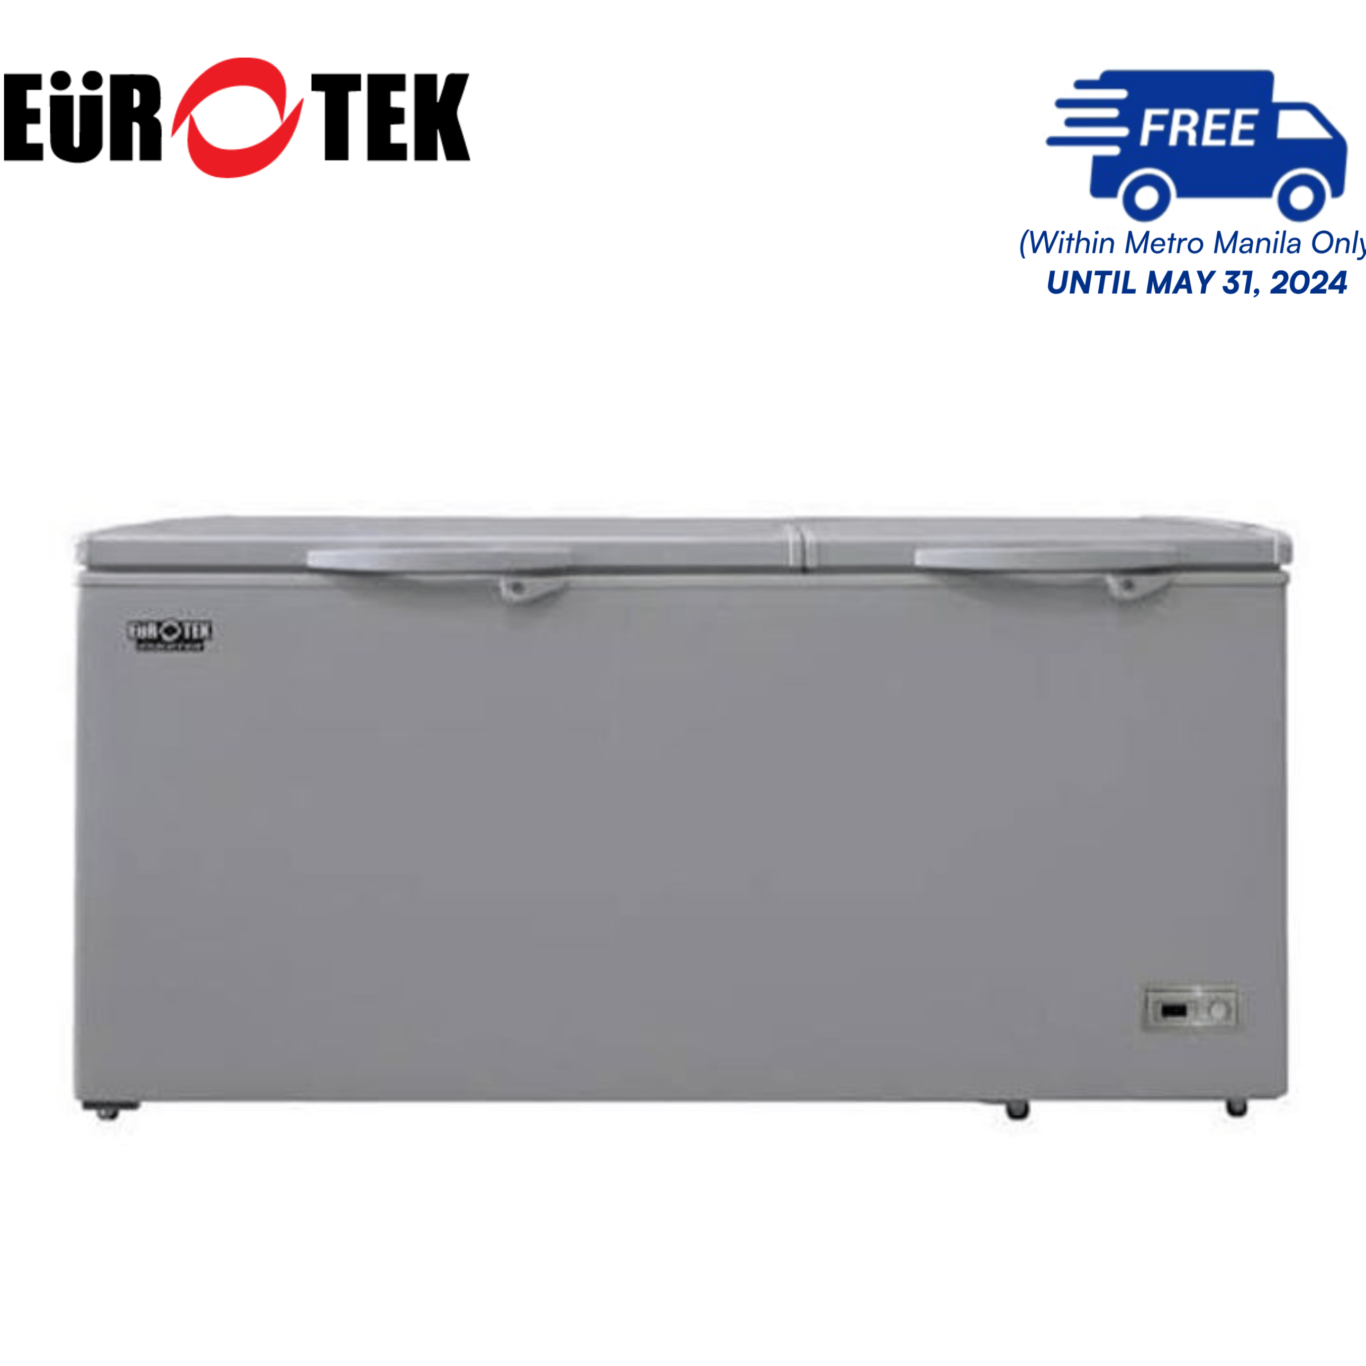 Eurotek ECF400IF